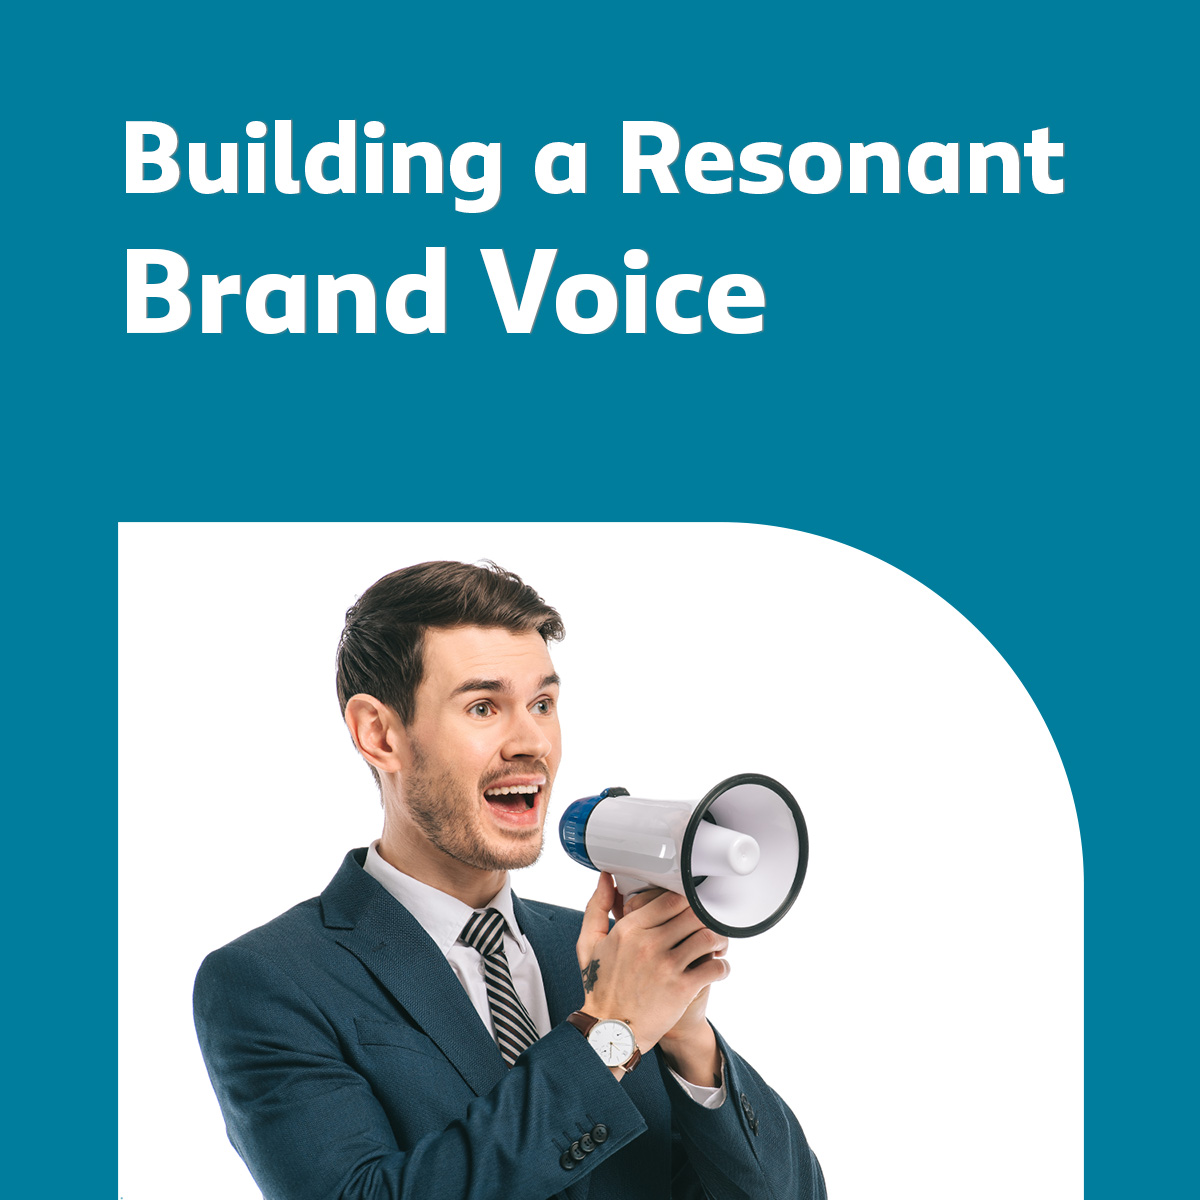 Resonant Brand Voice